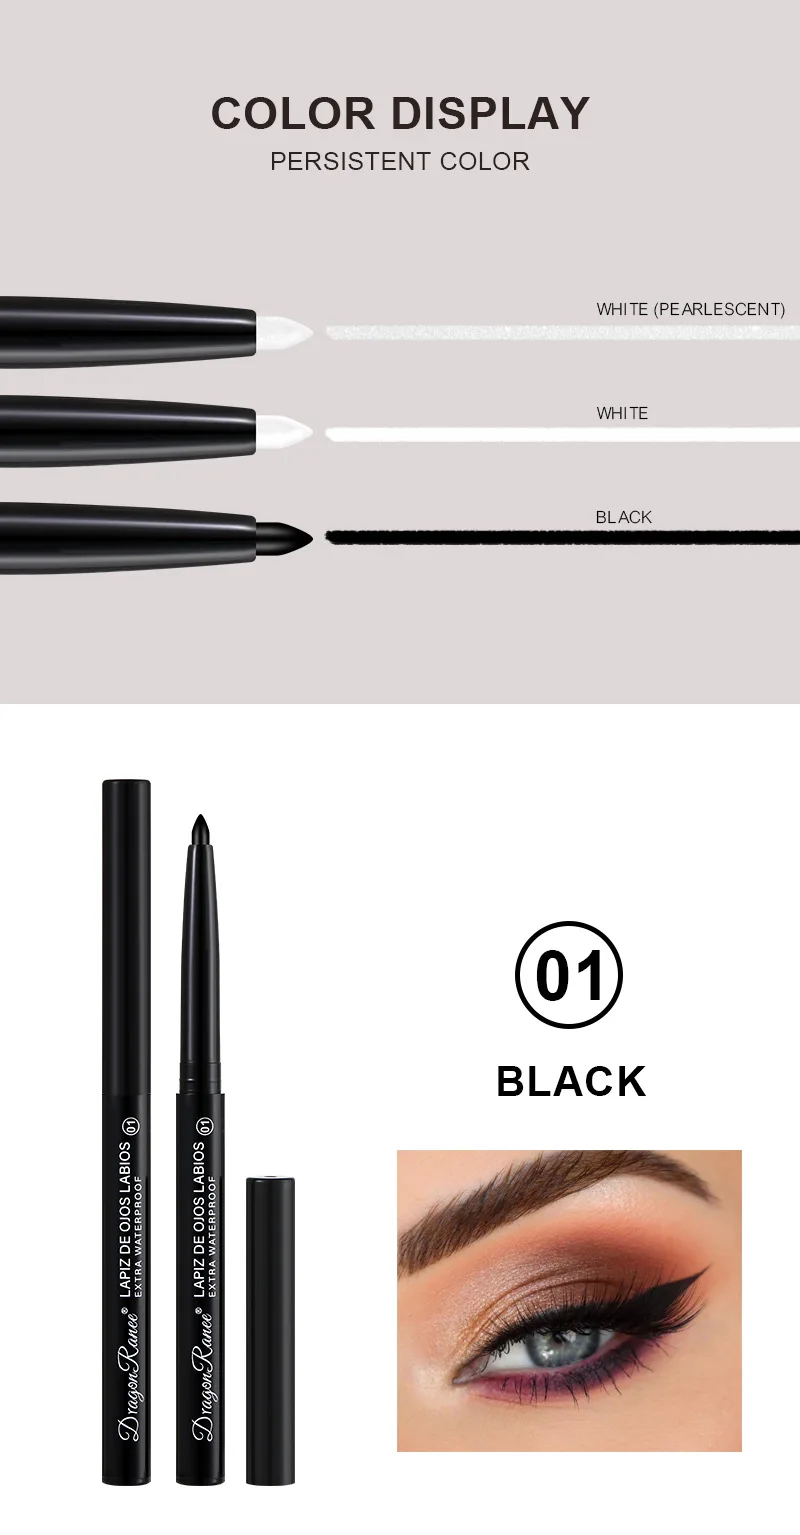 Pearl Waterproof Eyeliner Gel Pencil White Black Eye Liner Pen 24H Long Lasting High Pigment Matte Eyeliner Shiny Eyes Makeup